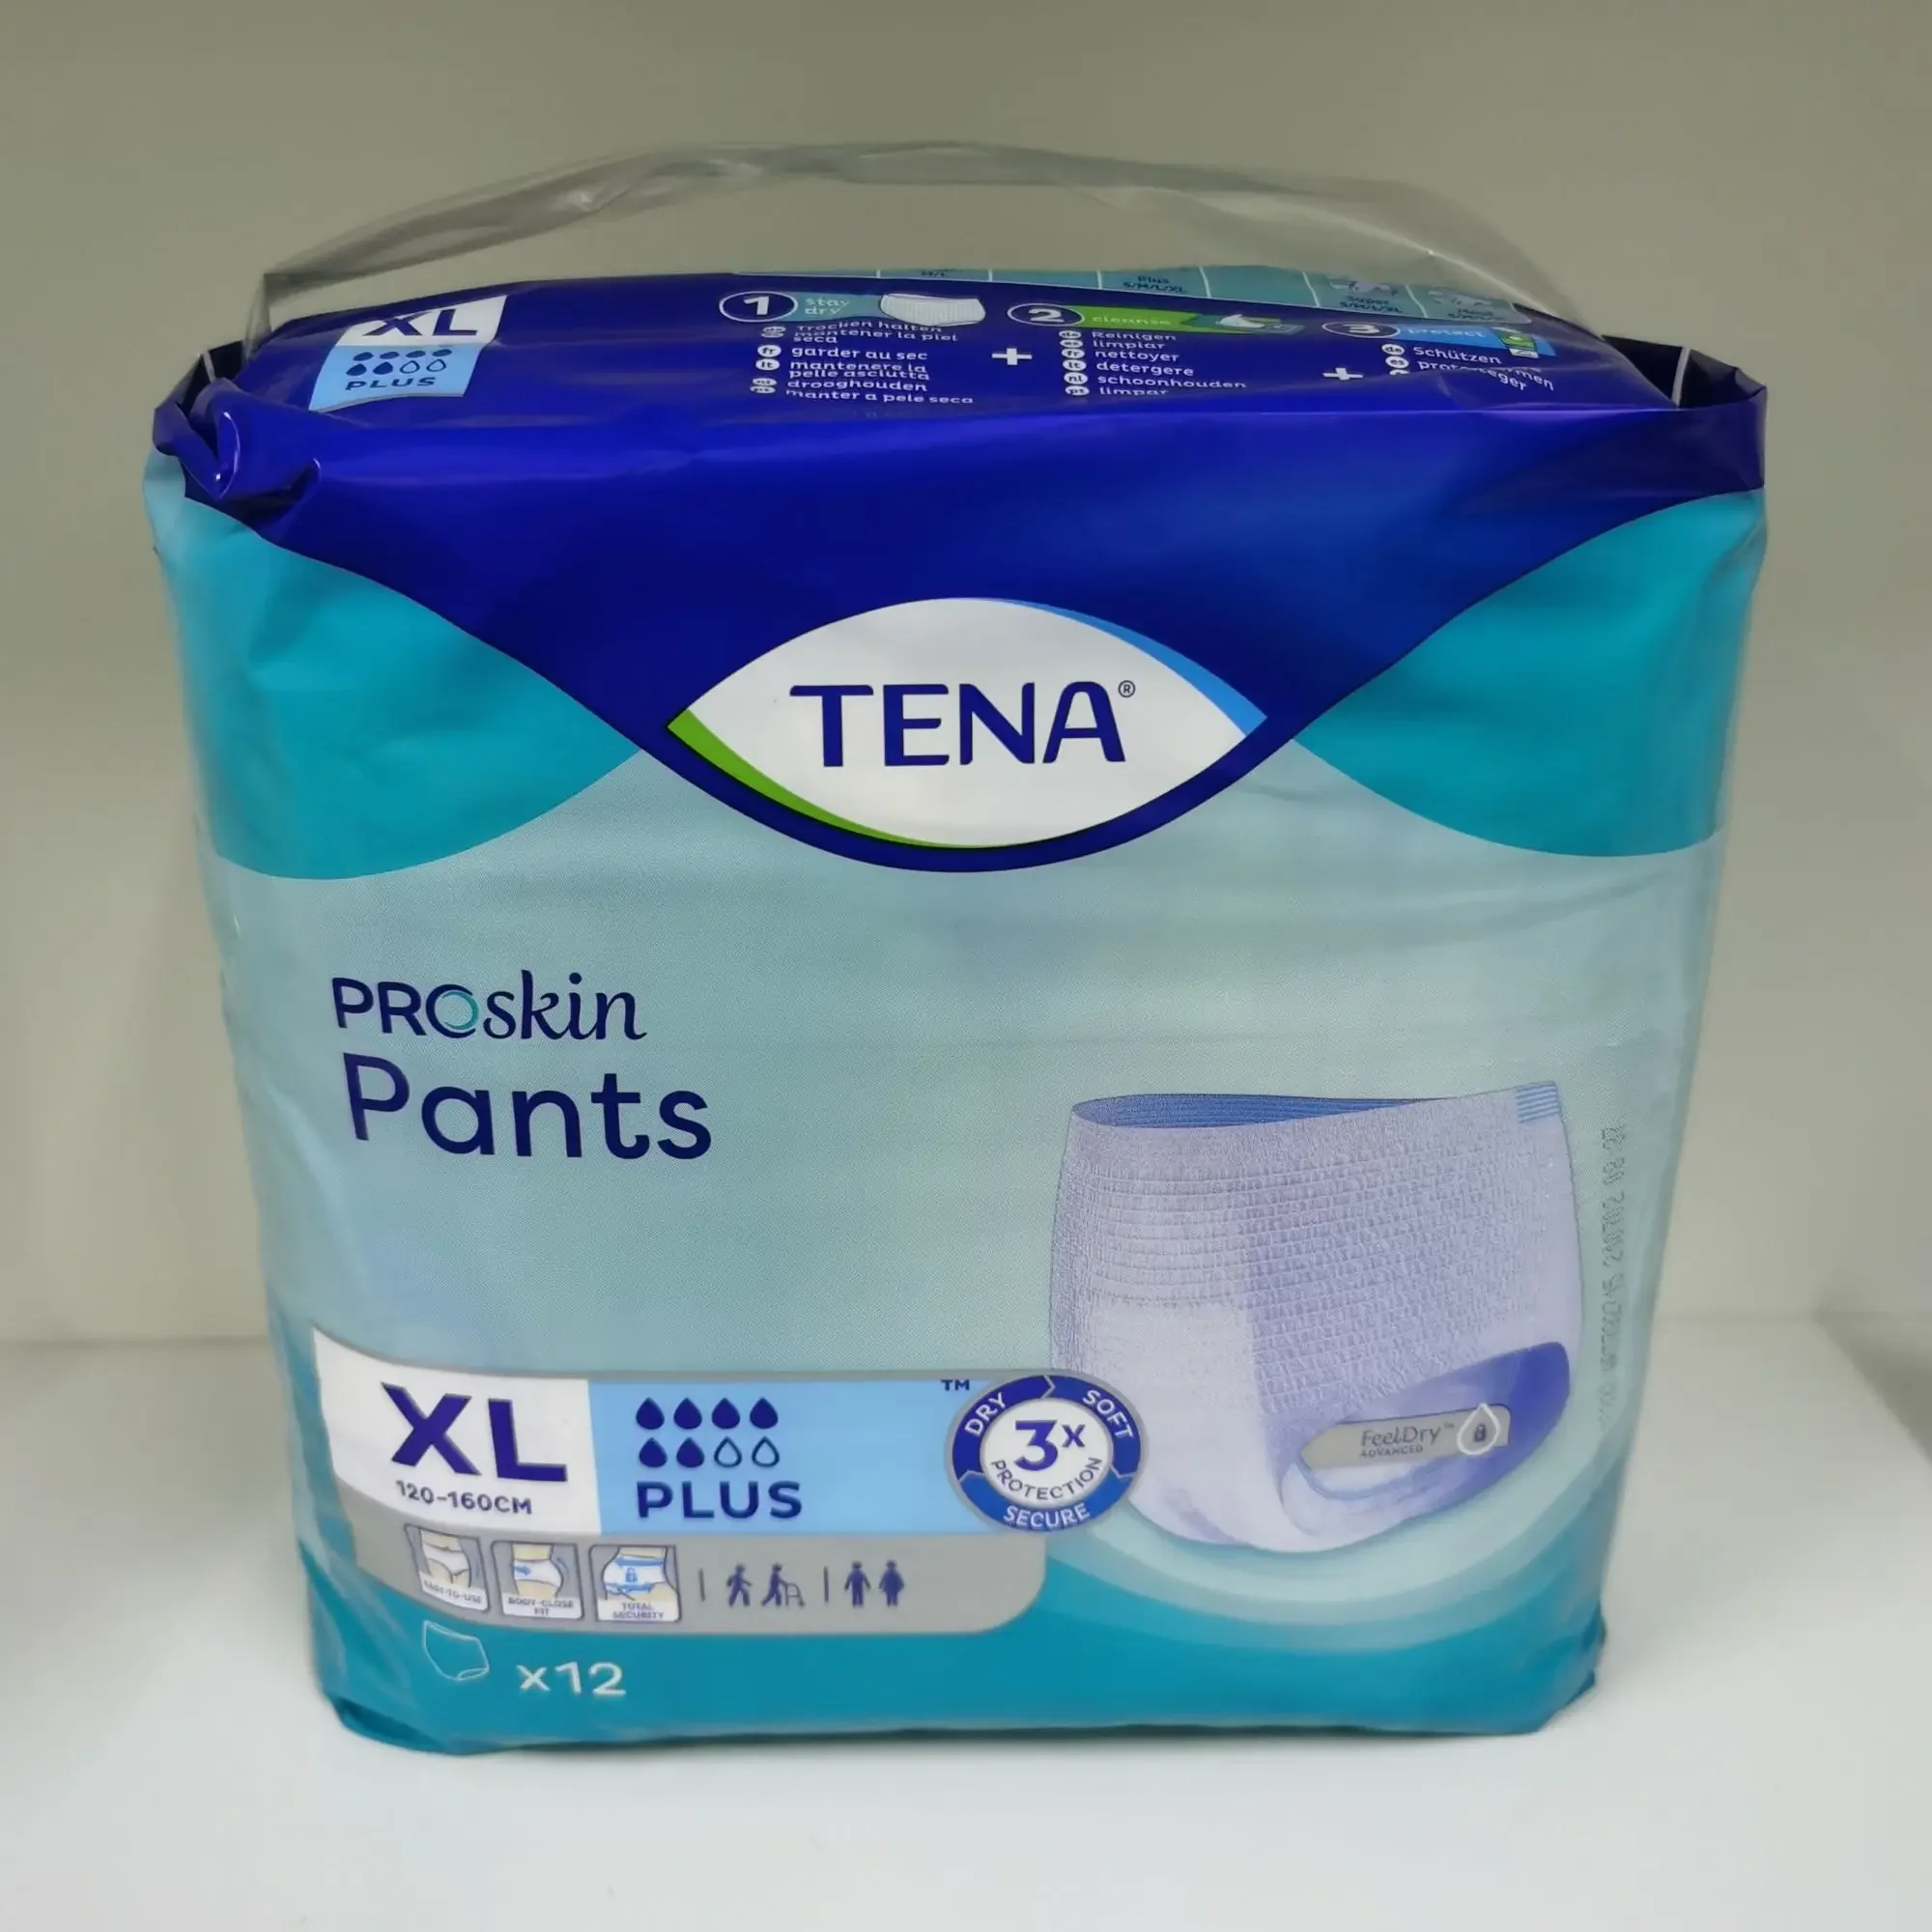 Tena Proskin Pants XL ( 120cm - 160cm) 12pcs